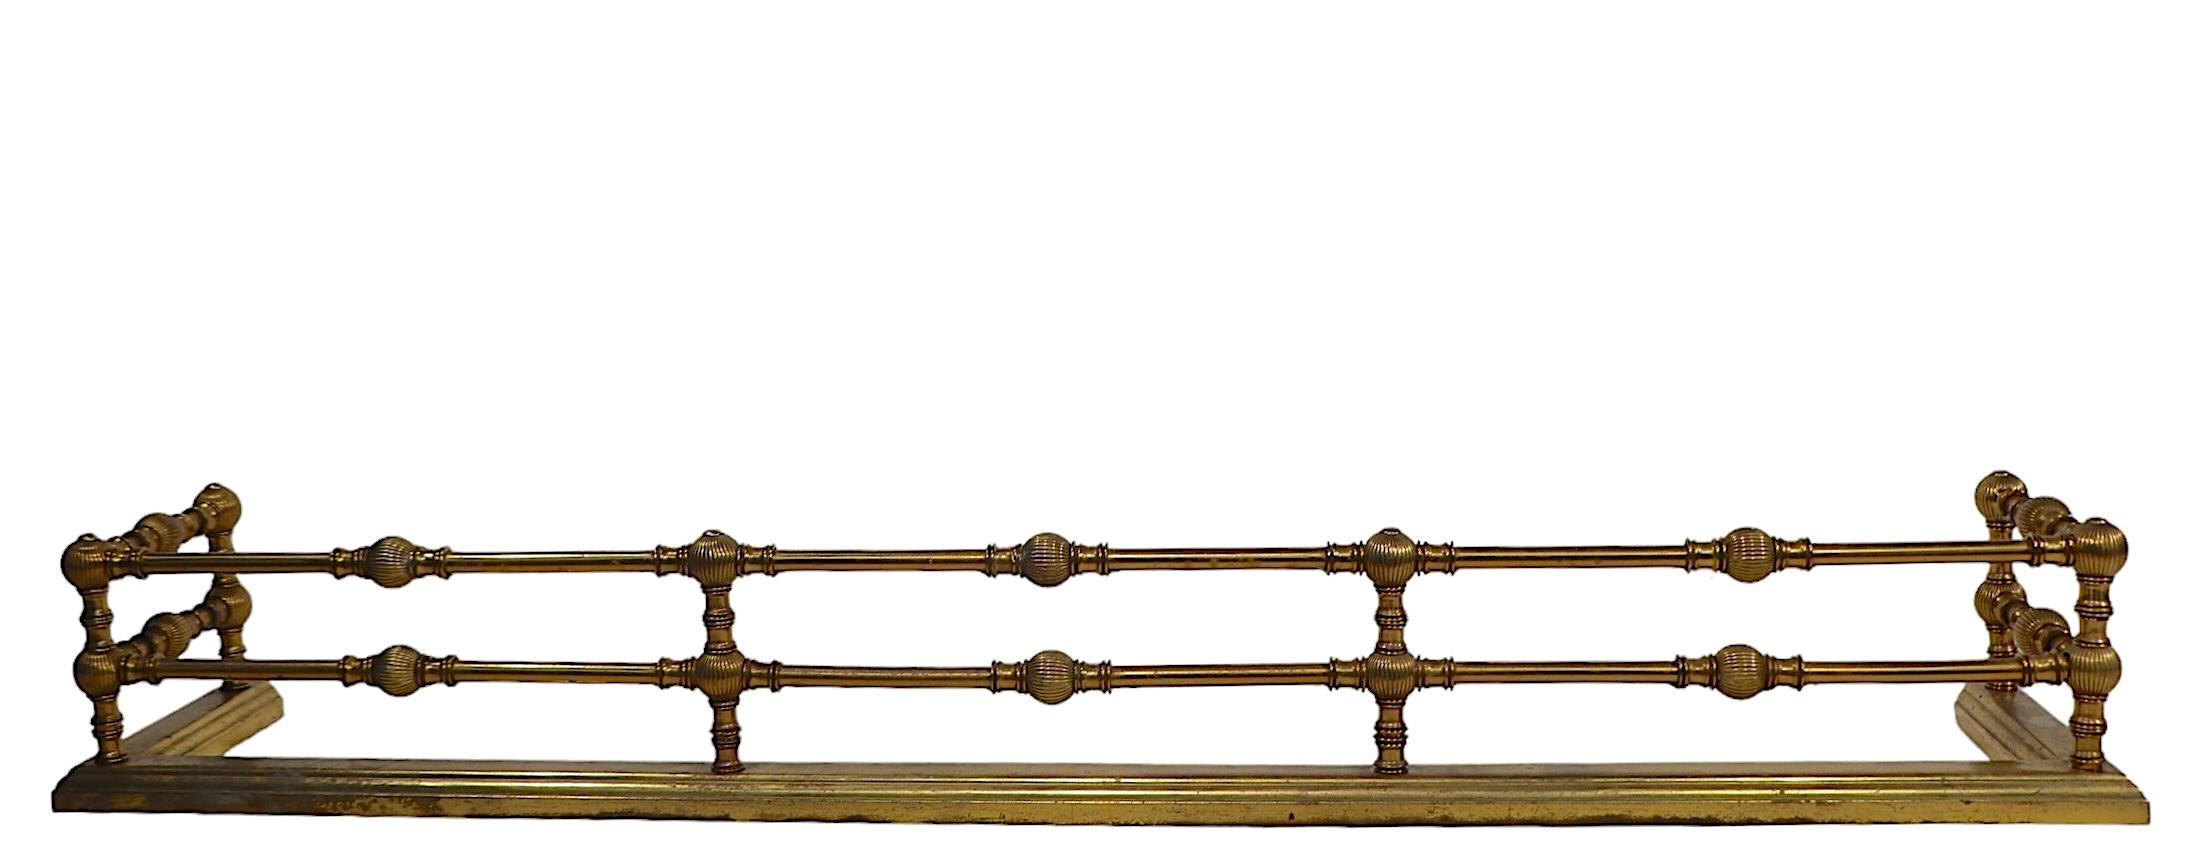 Klassisch viktorianisch,  Aesthetic Movement Kaminschutzgitter aus Messing. Der Fender verfügt über zwei sich wiederholende Messingschienen mit dekorativen geriffelten Kugelaussparungen.  Ende des 19. Jahrhunderts, dieses Exemplar wurde